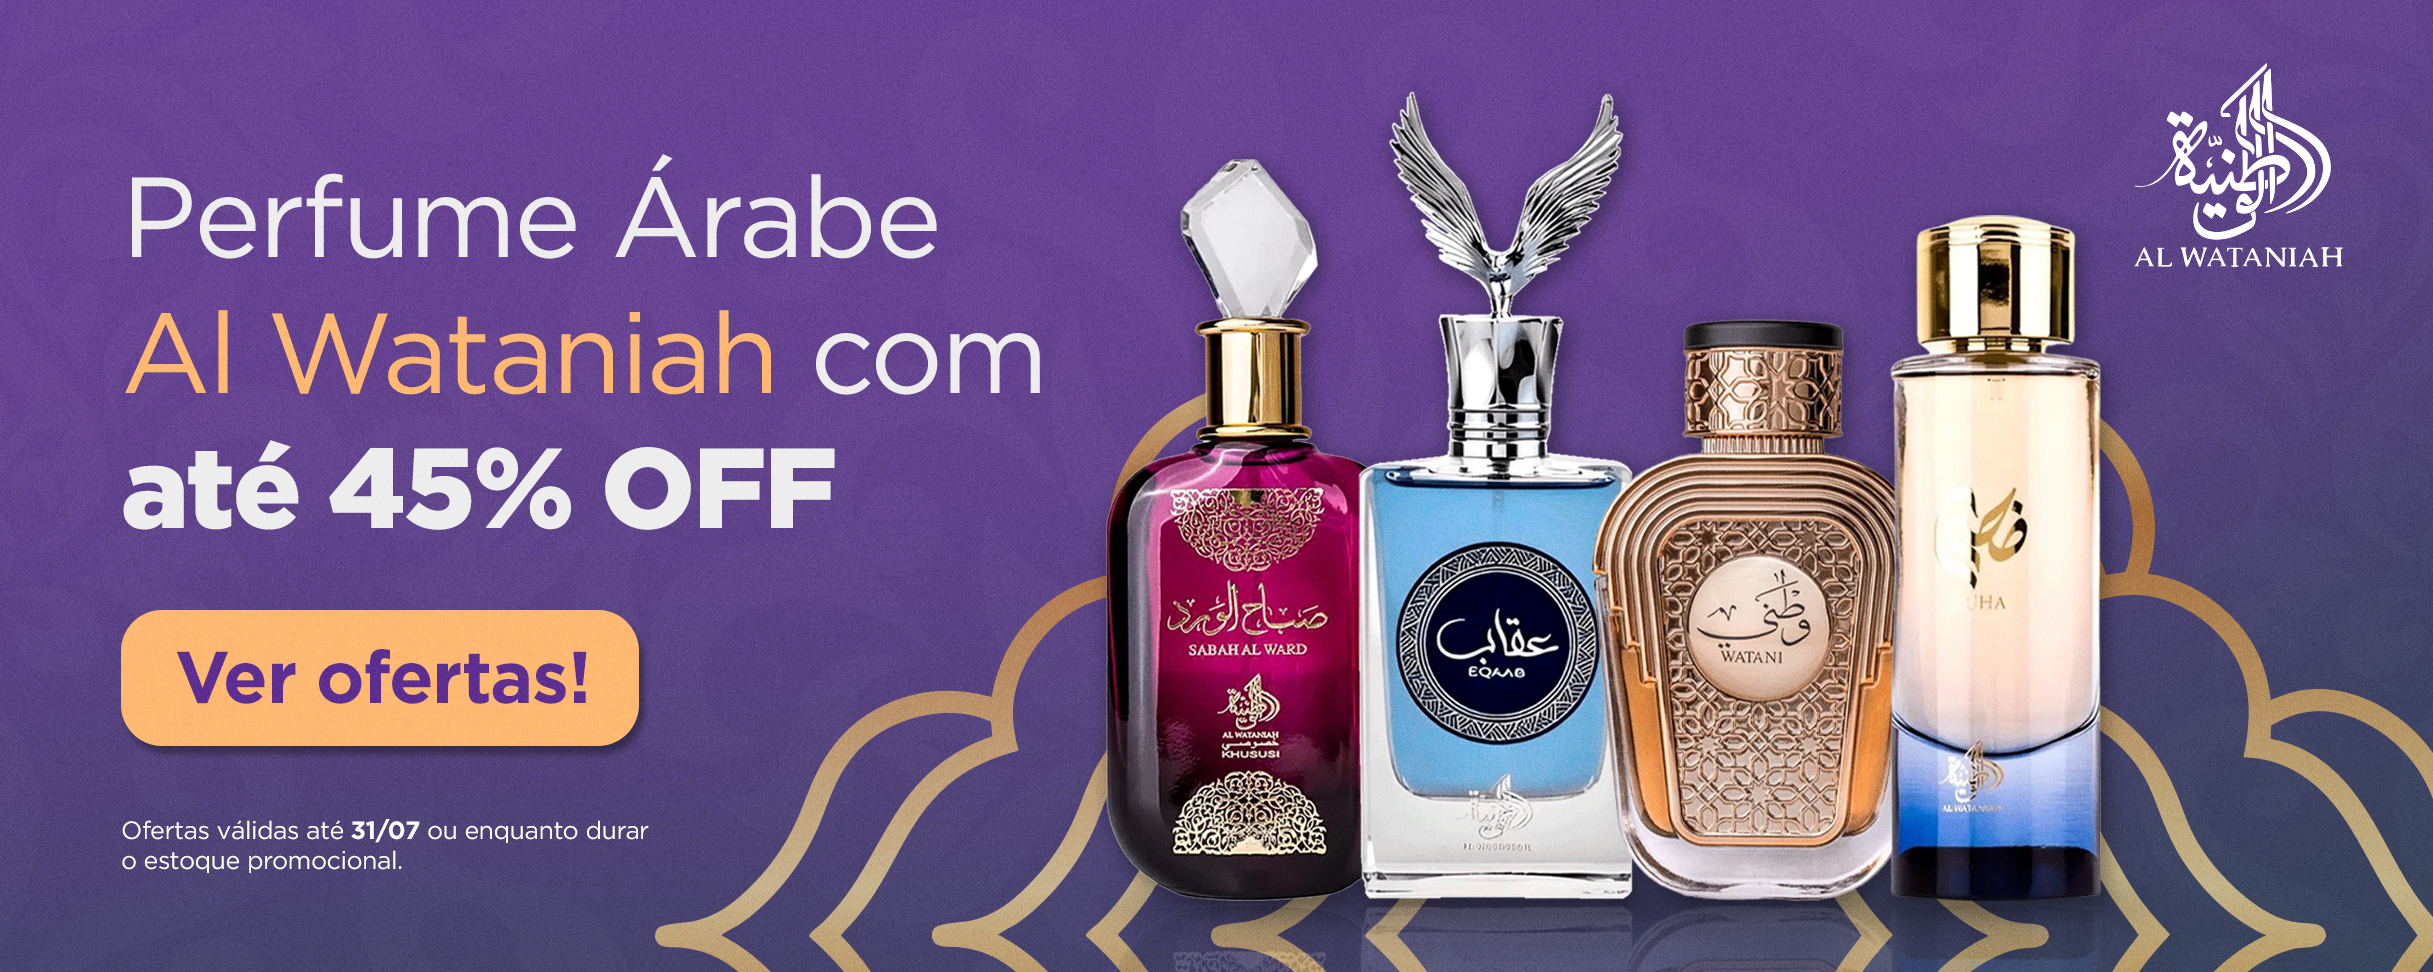 Festival de Perfumes importados - Al Wataniah